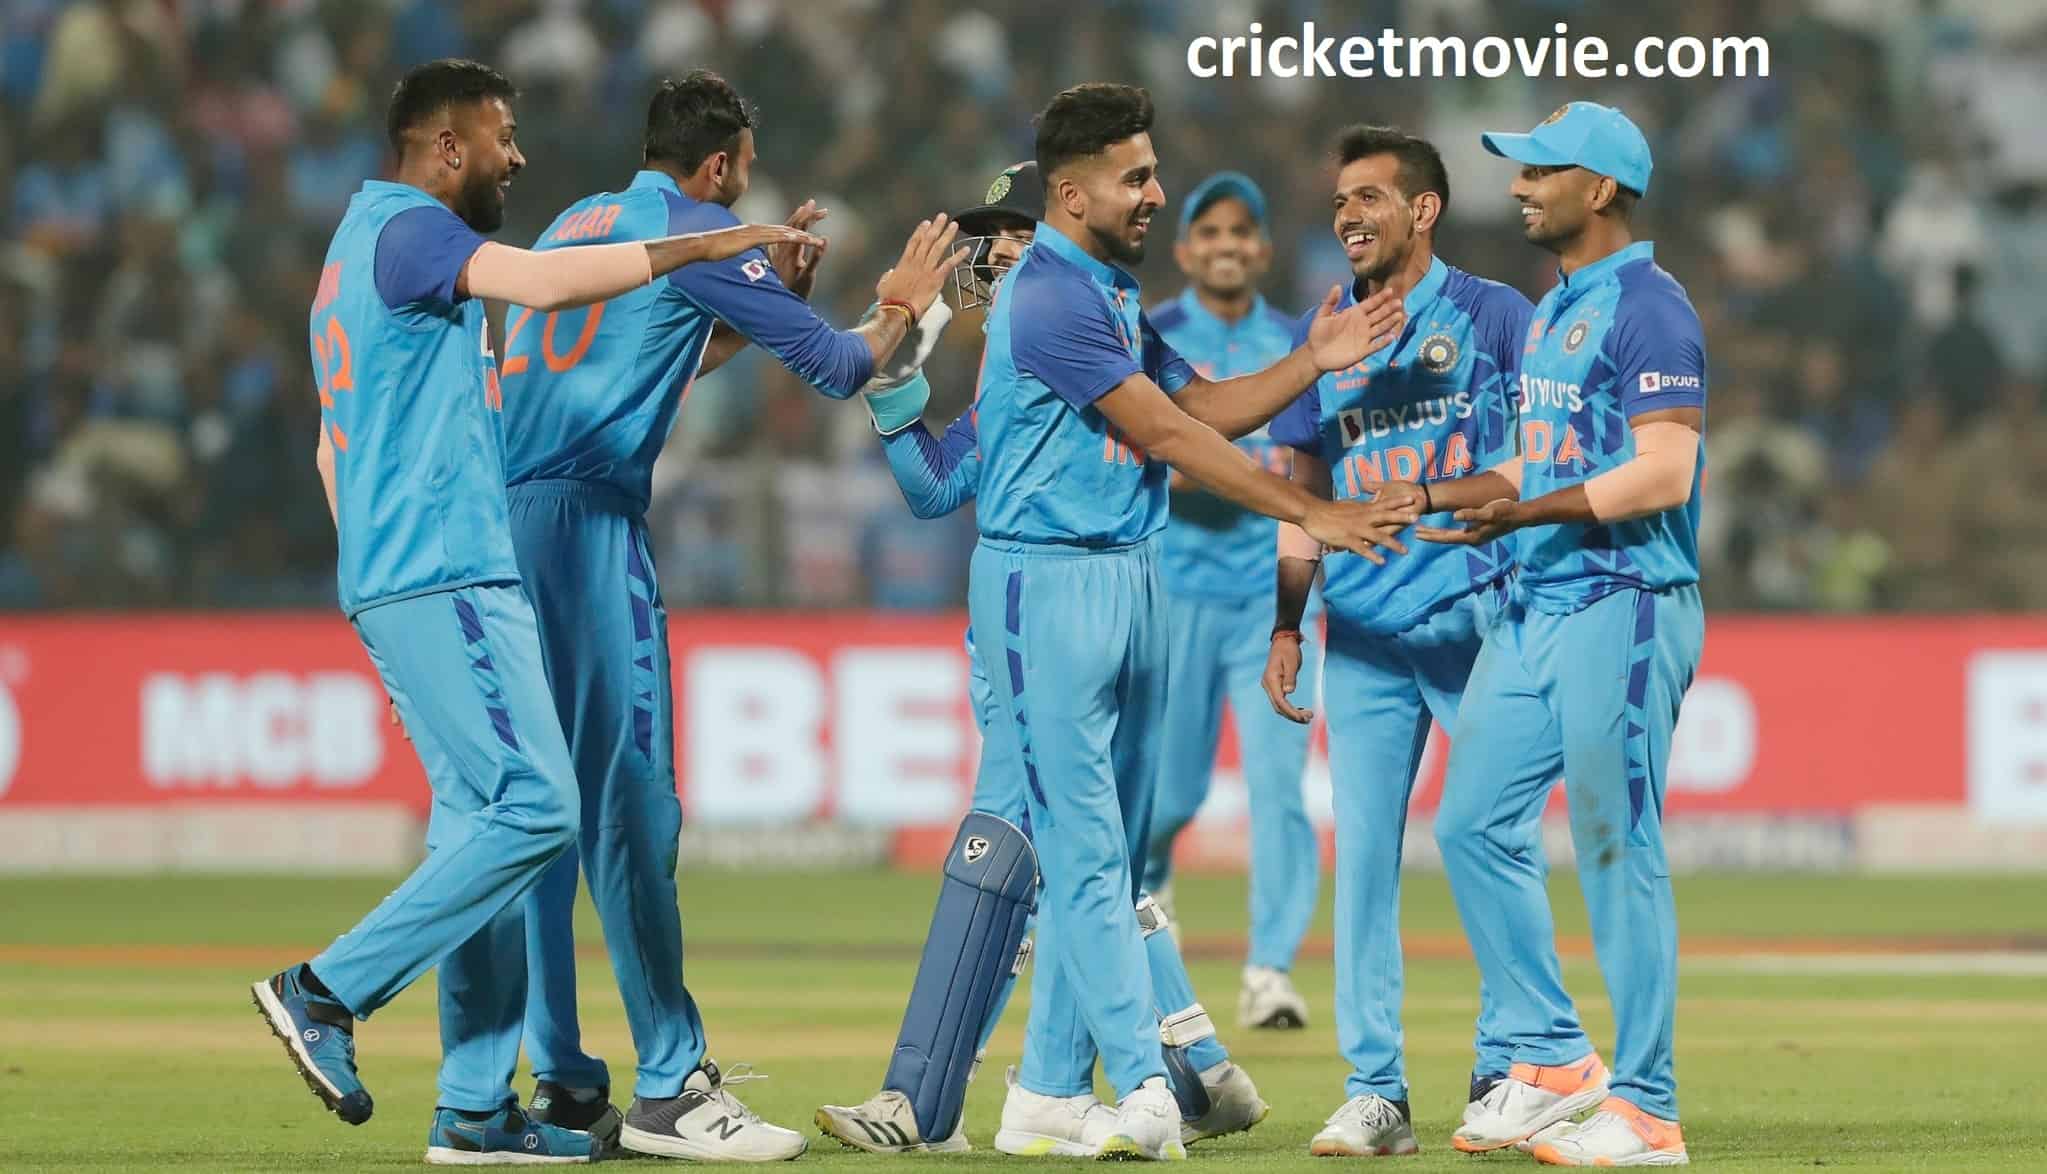 Sri Lanka beat India in 2nd T20I-cricketmovie.com